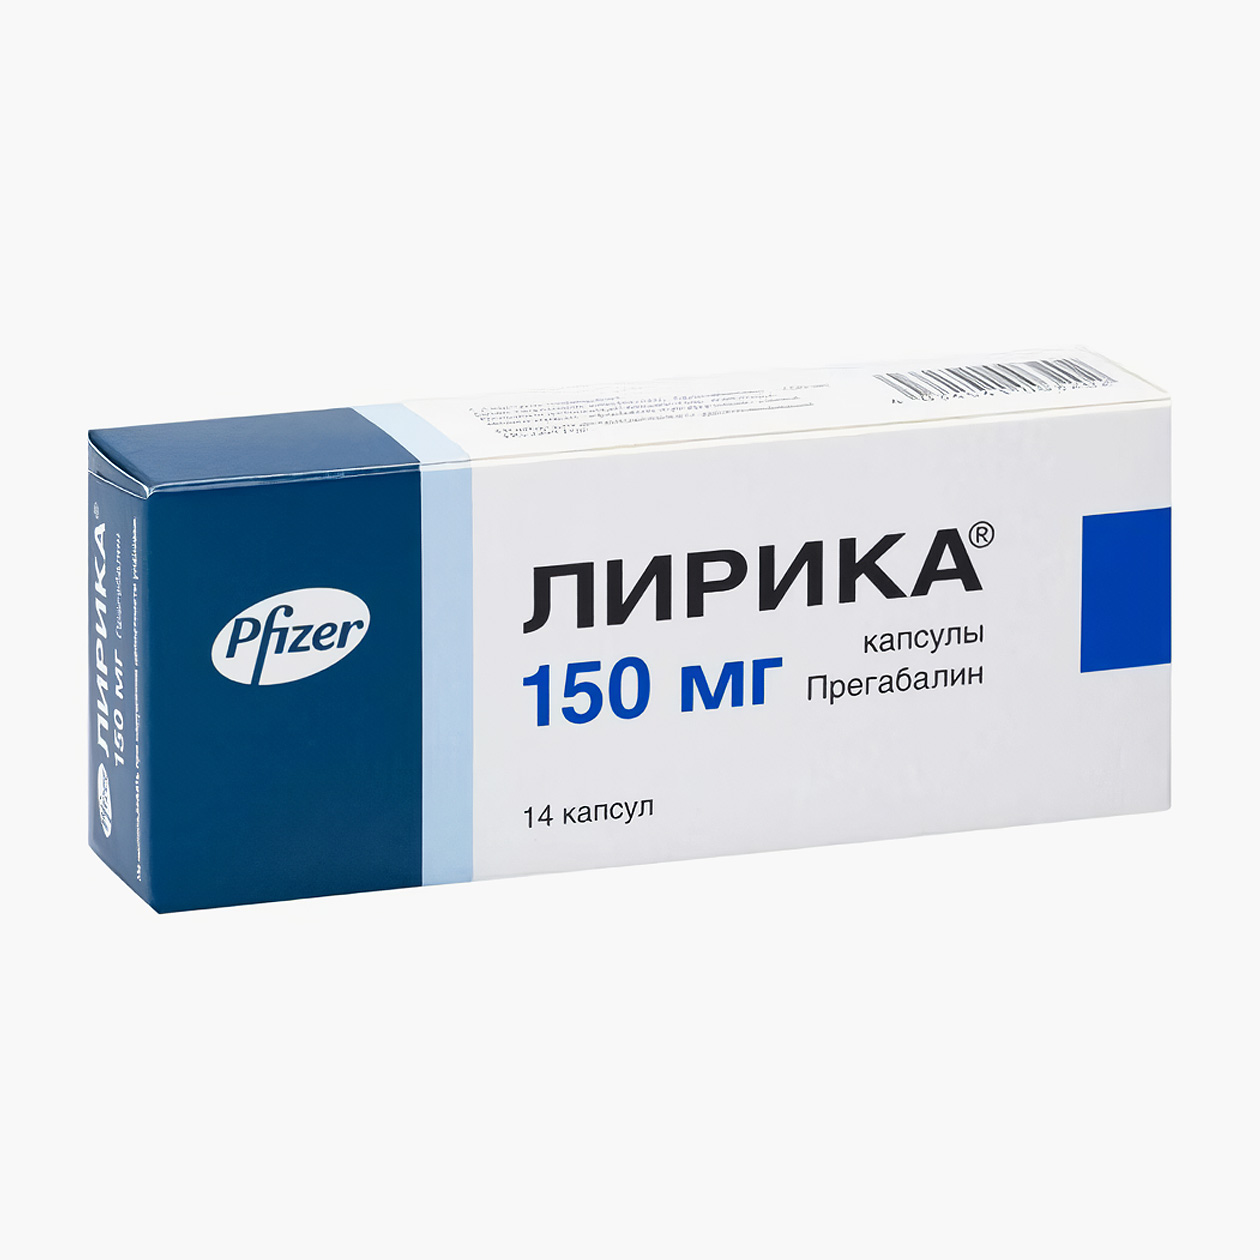 Упаковка с 14 капсулами прегабалина в минимальной дозировке 150 мг стоит минимум 280 ₽. Источник: planetazdorovo.ru